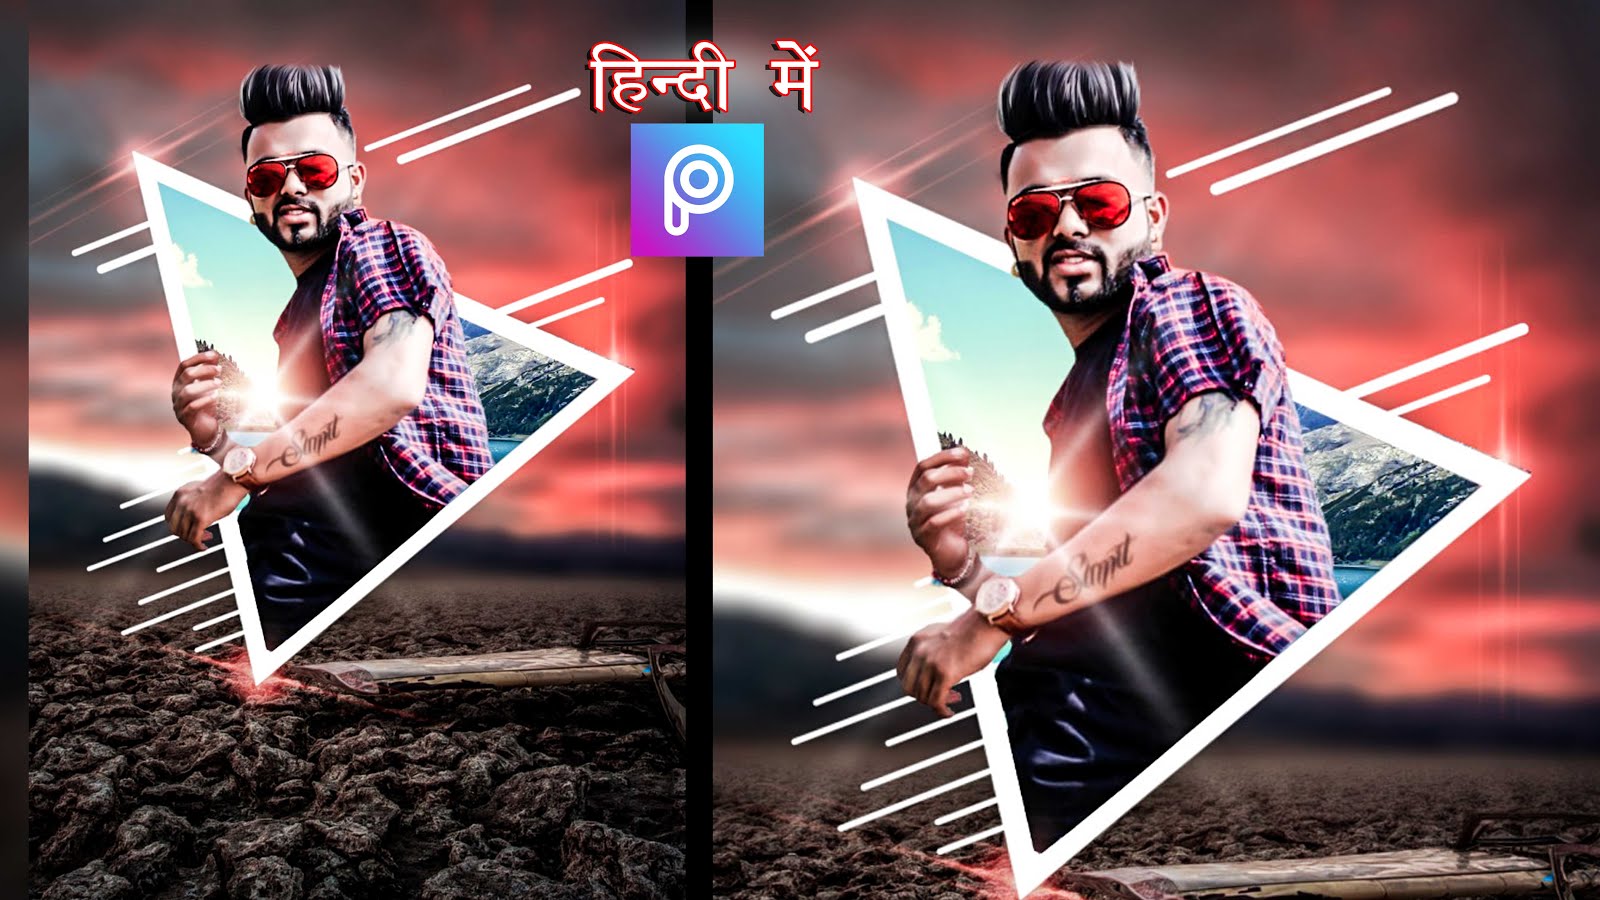 New concept picsart photo editing in hindi, triangle 3D photo editing  picsart - LEARNINGWITHSR